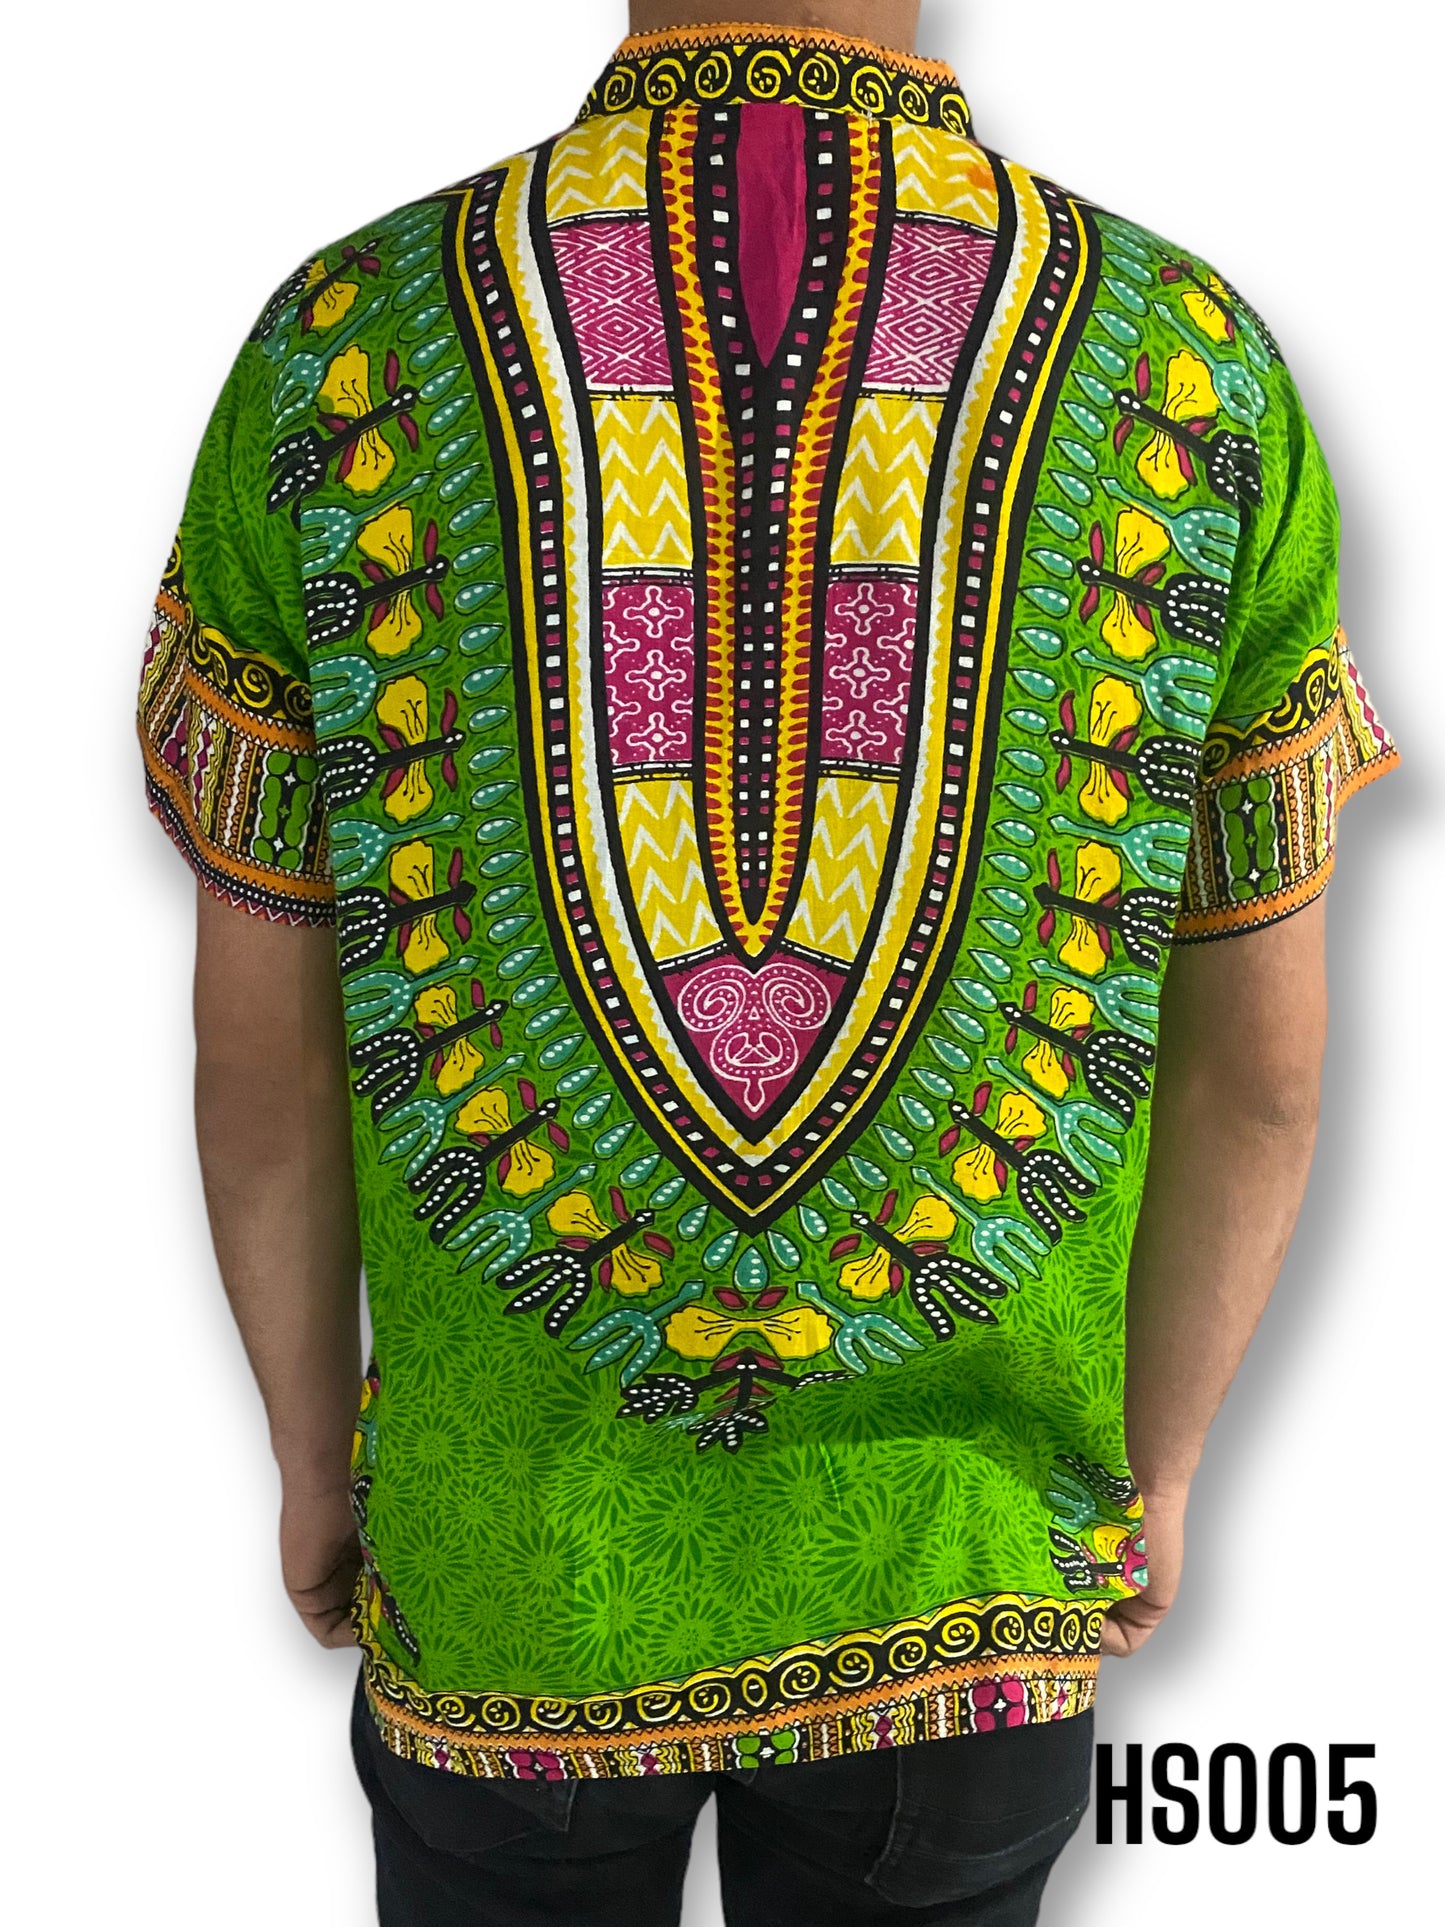 Camisa de Hombre de Botones con Estampado Afrocaribeño Verde